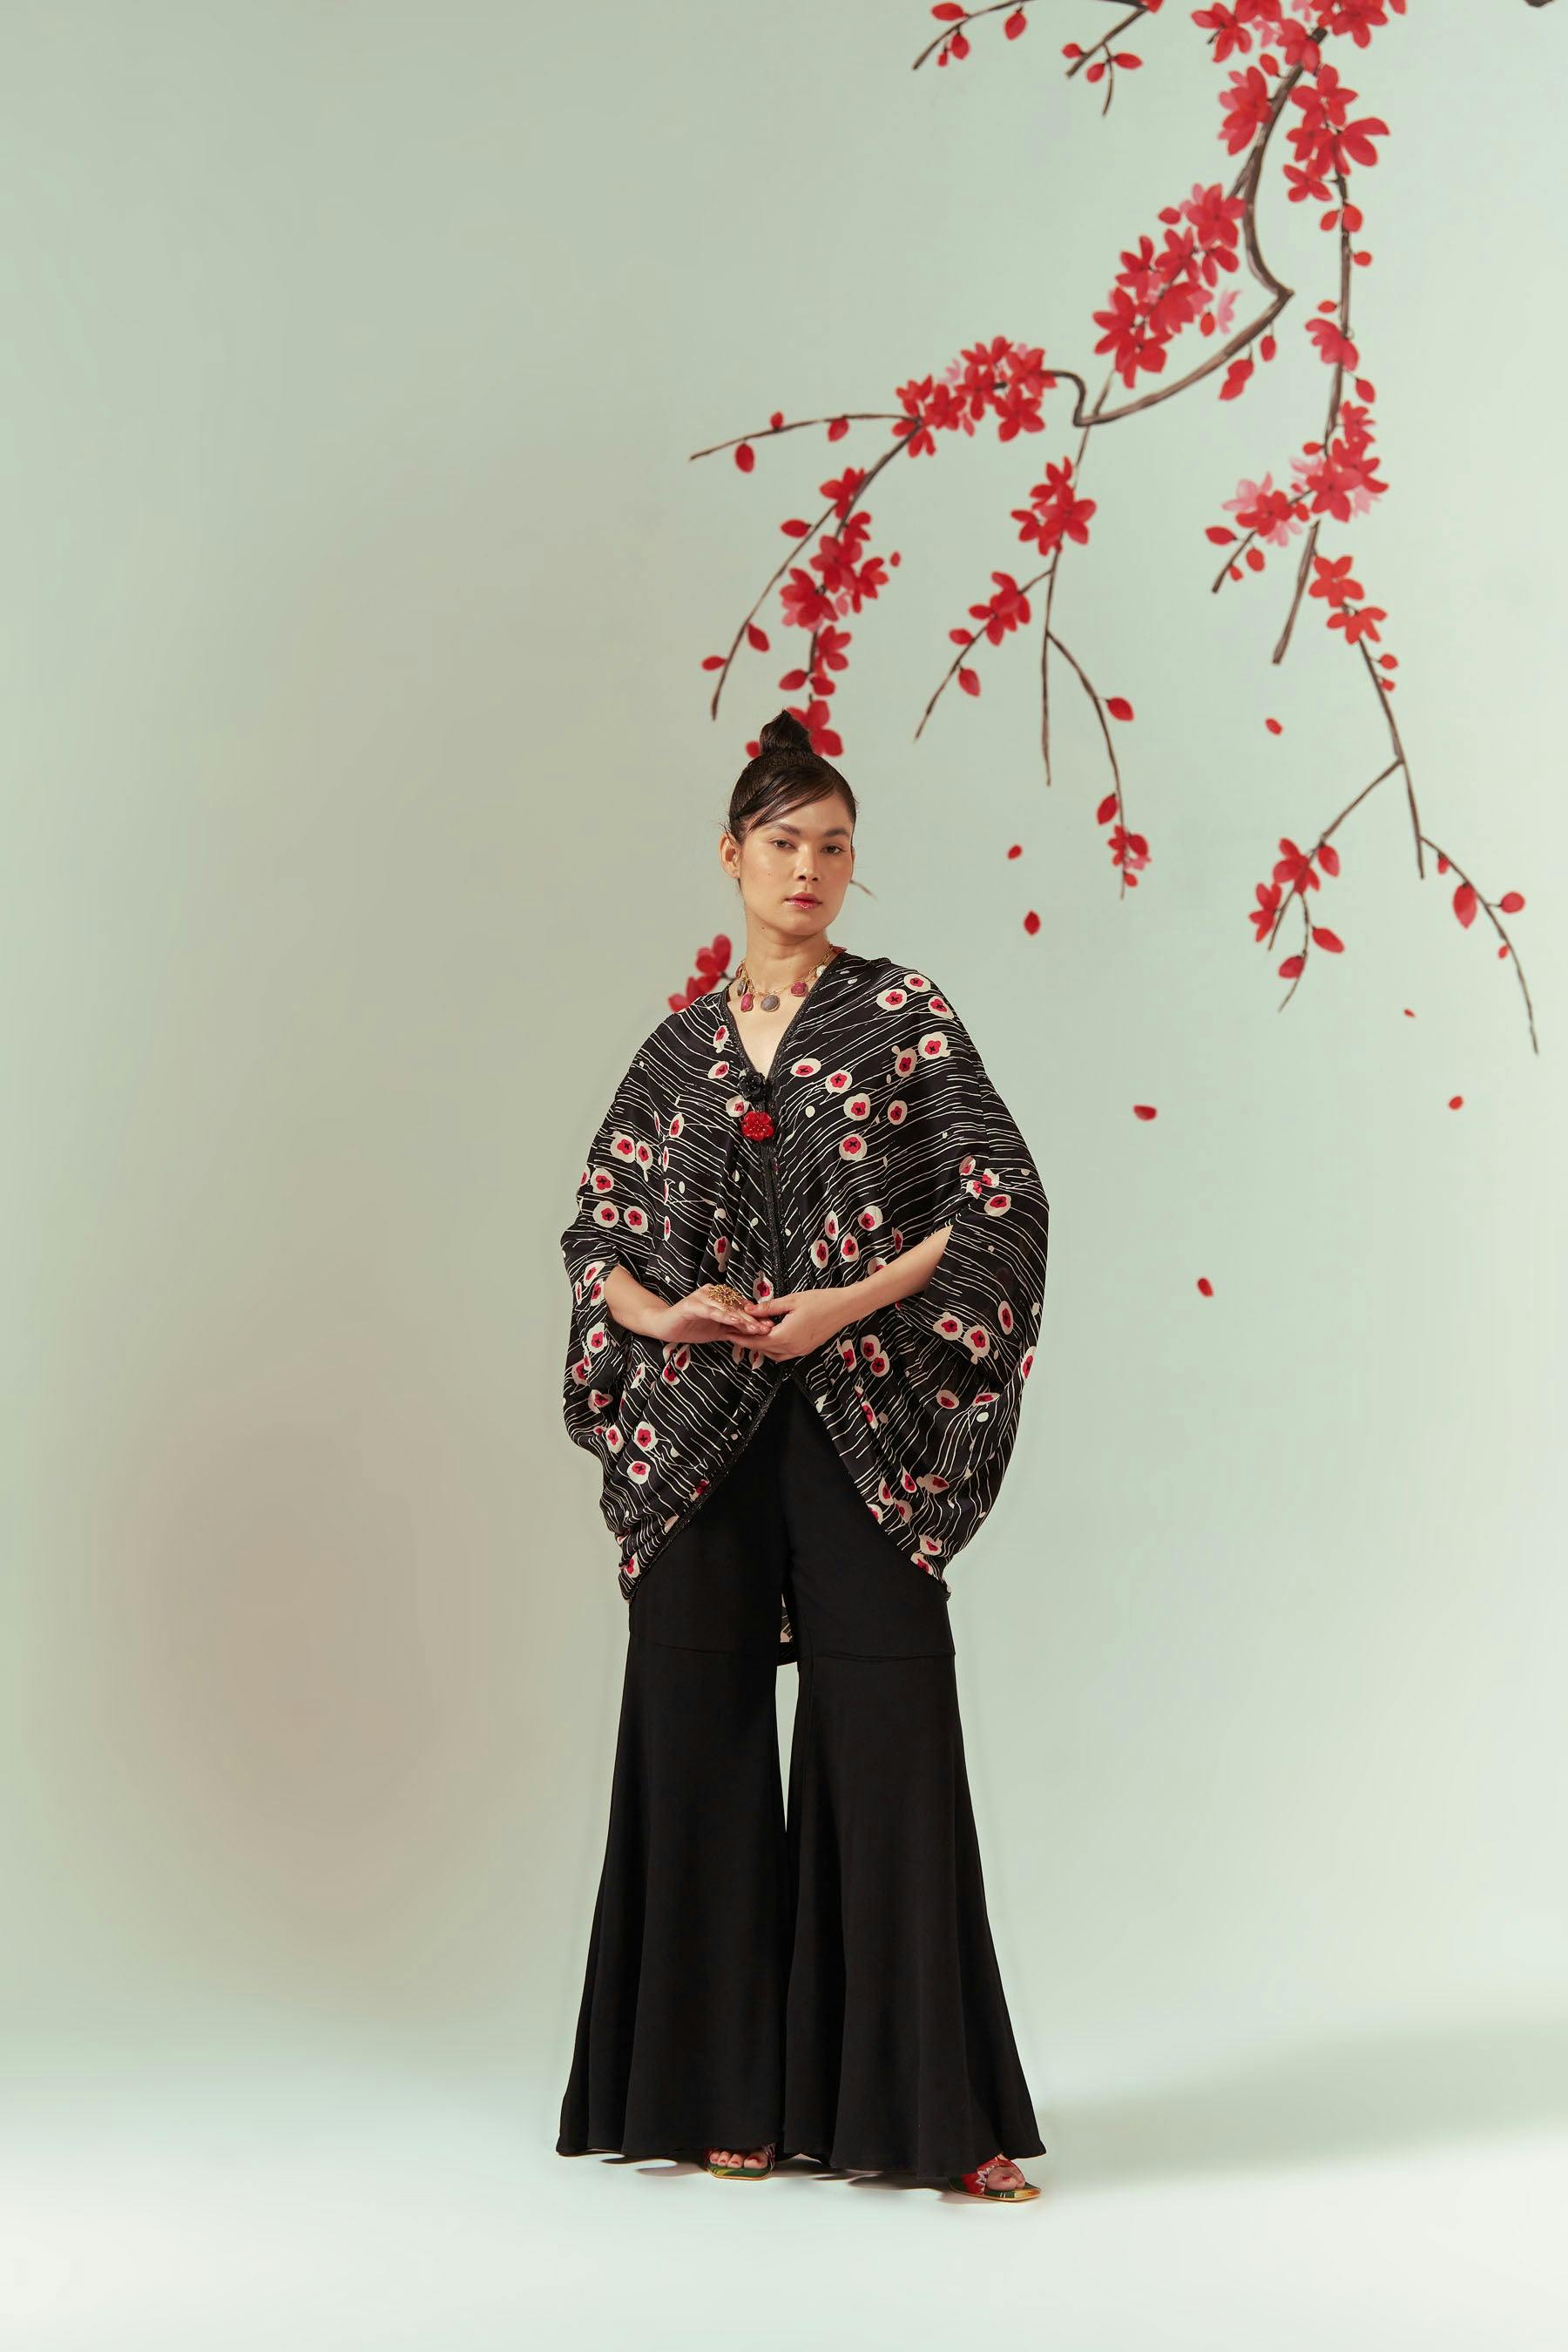 Sakura Cape Top With Sharara Pants Co-ord Set, a product by COEUR by Ankita Khurana